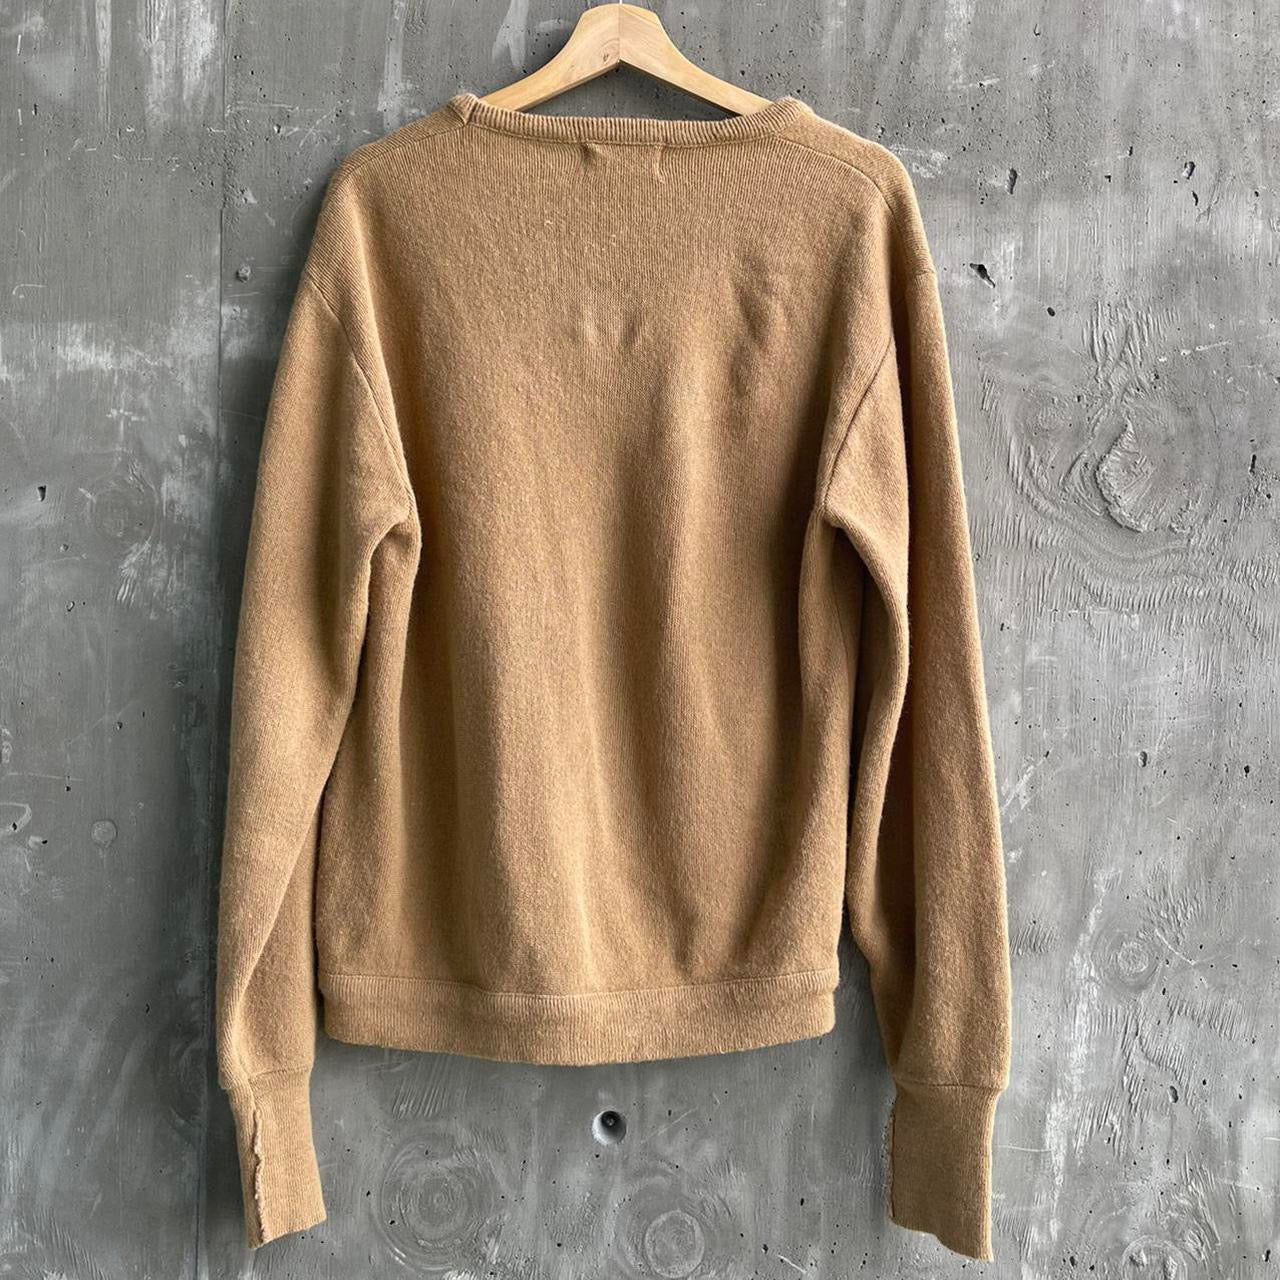 Vintage Lacoste x Izod Knit Sweater